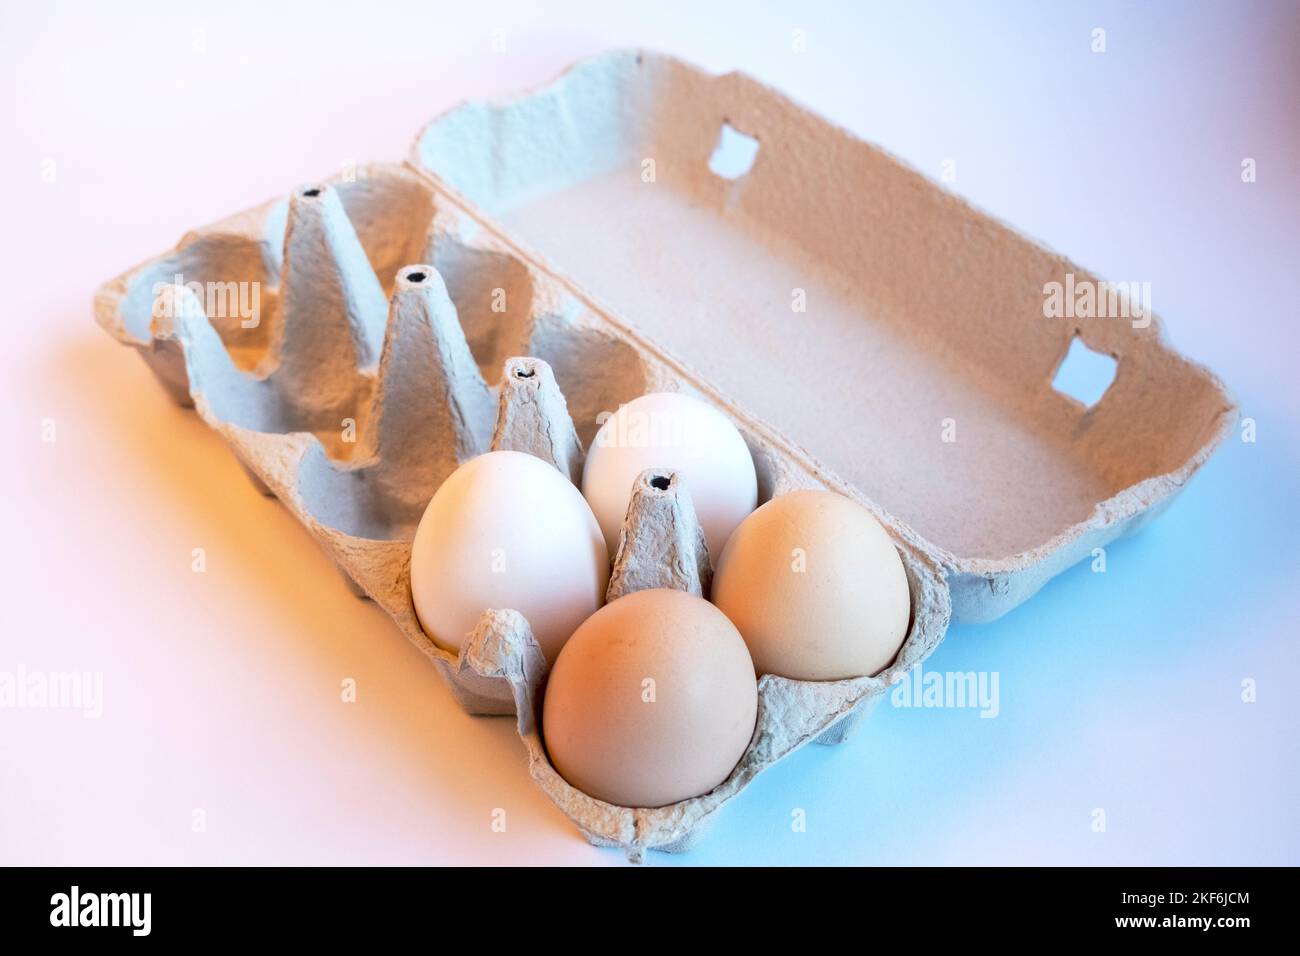 Frische zwei hellbraune und zwei weiße Eier in einer Papierbox und sechs leere Plätze für gesunde Lebensmittel. Eierbehälter aus recycelbarem Material. Stockfoto